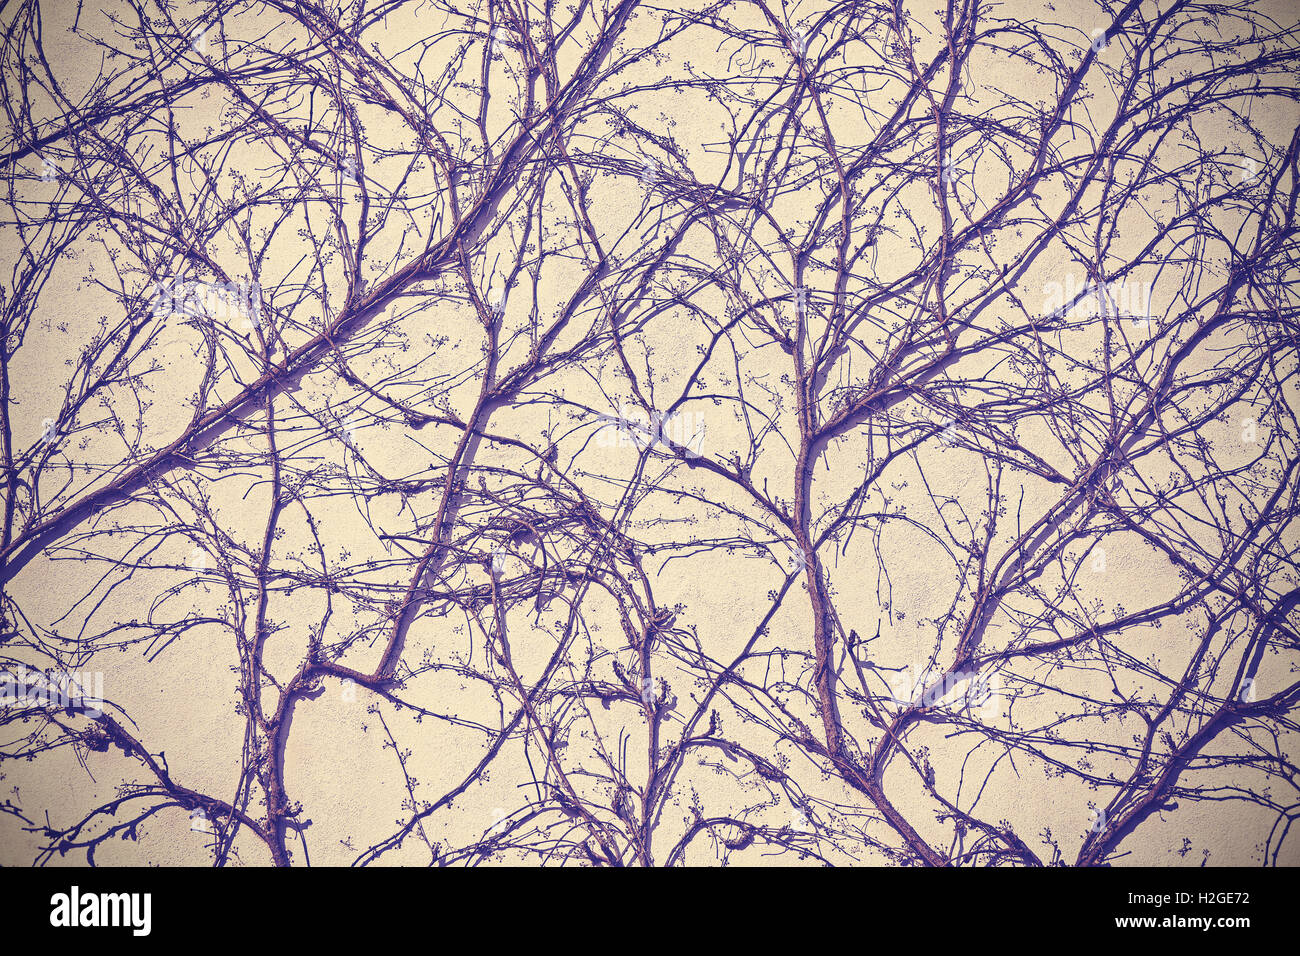 Lo spunto da fermi impianto appassiti sulla parete di sfondo, vintage viola filtro applicato. Foto Stock